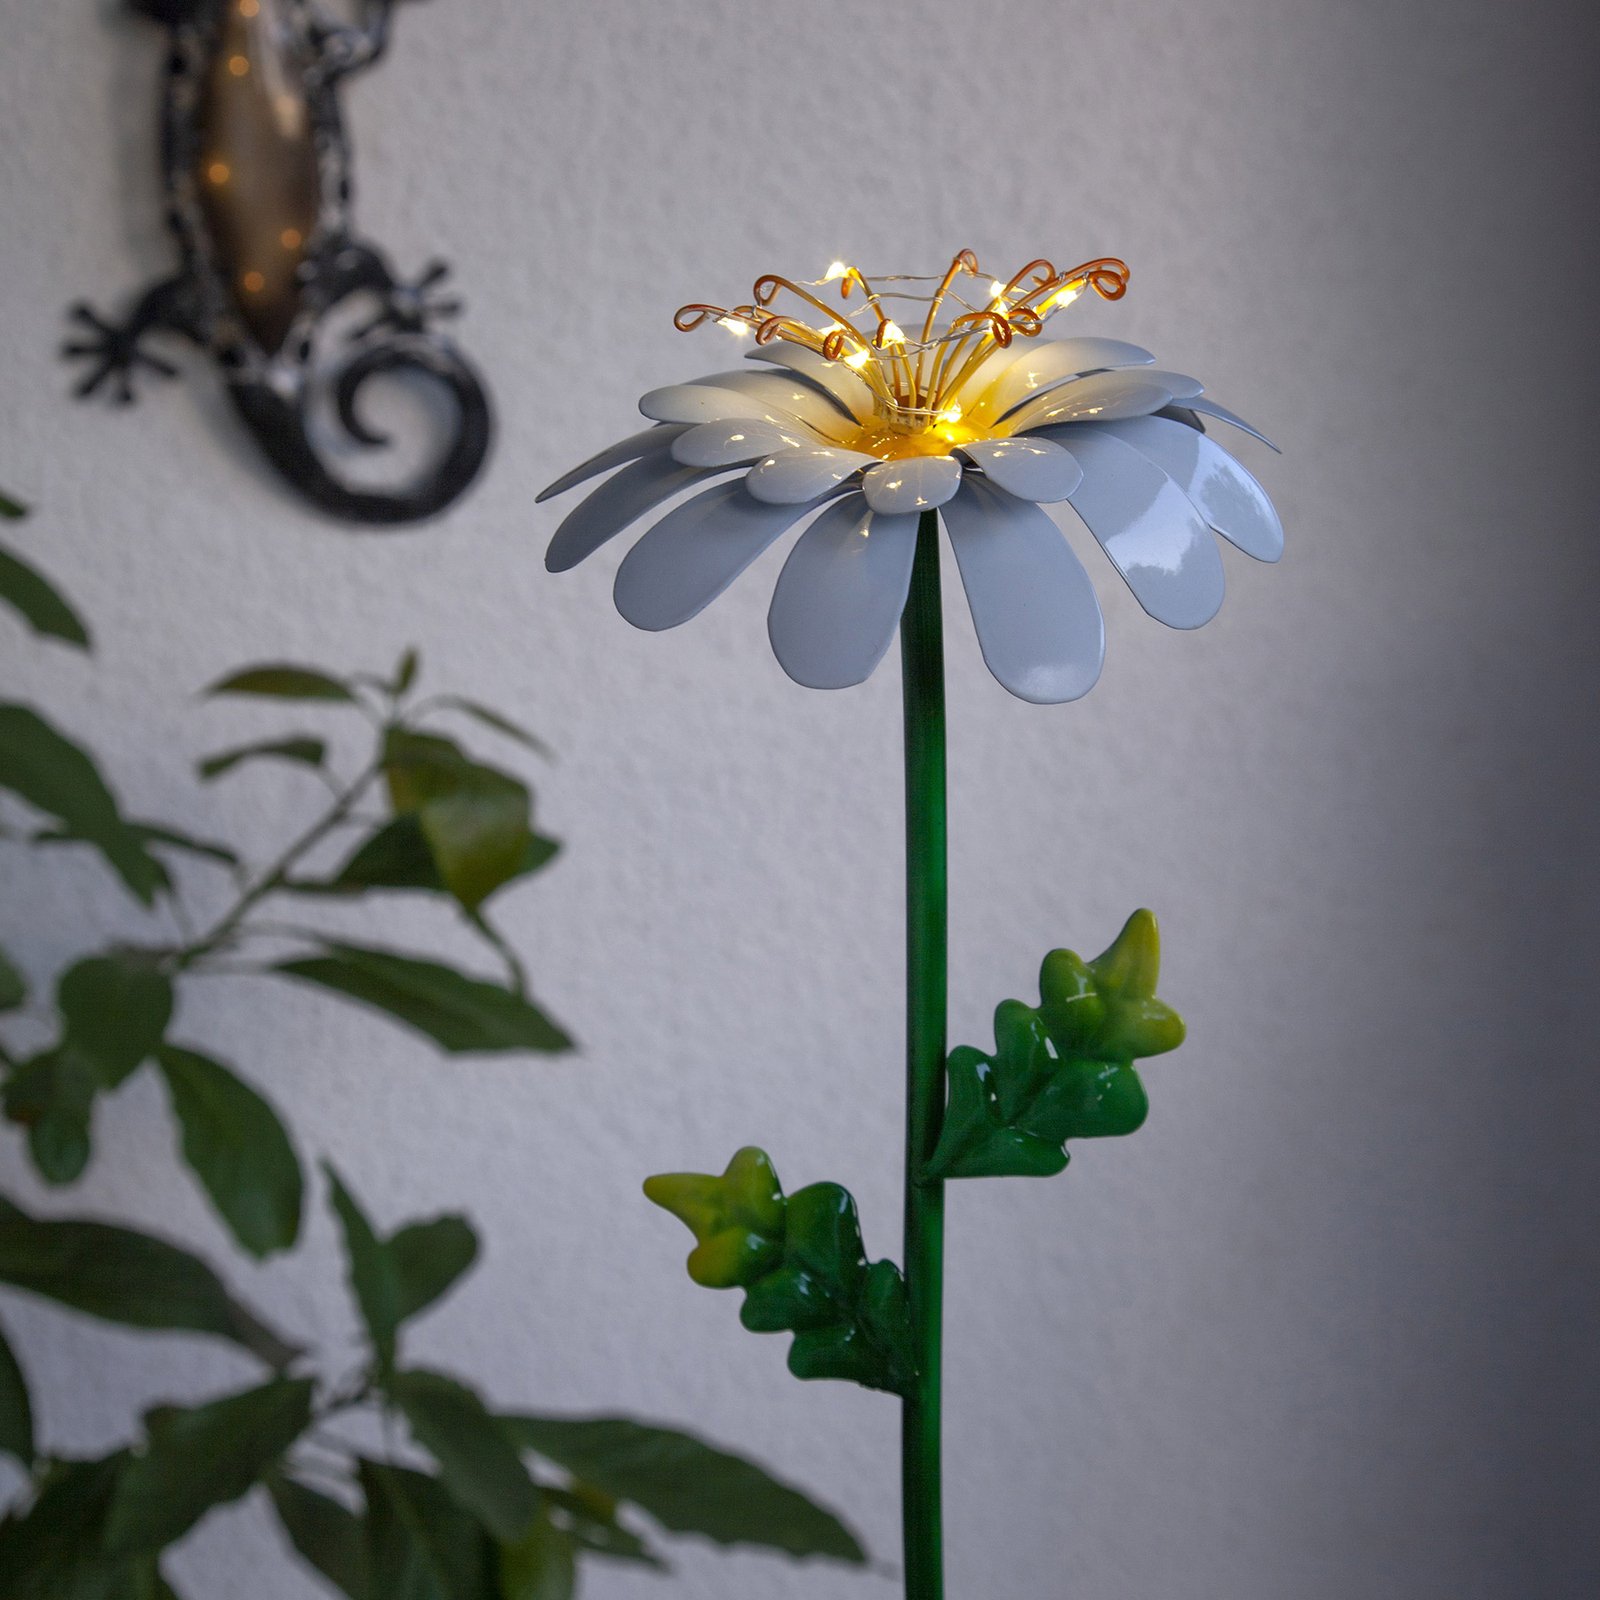 Daisy LED saulės šviesos diodų šviestuvas, primenantis margainį